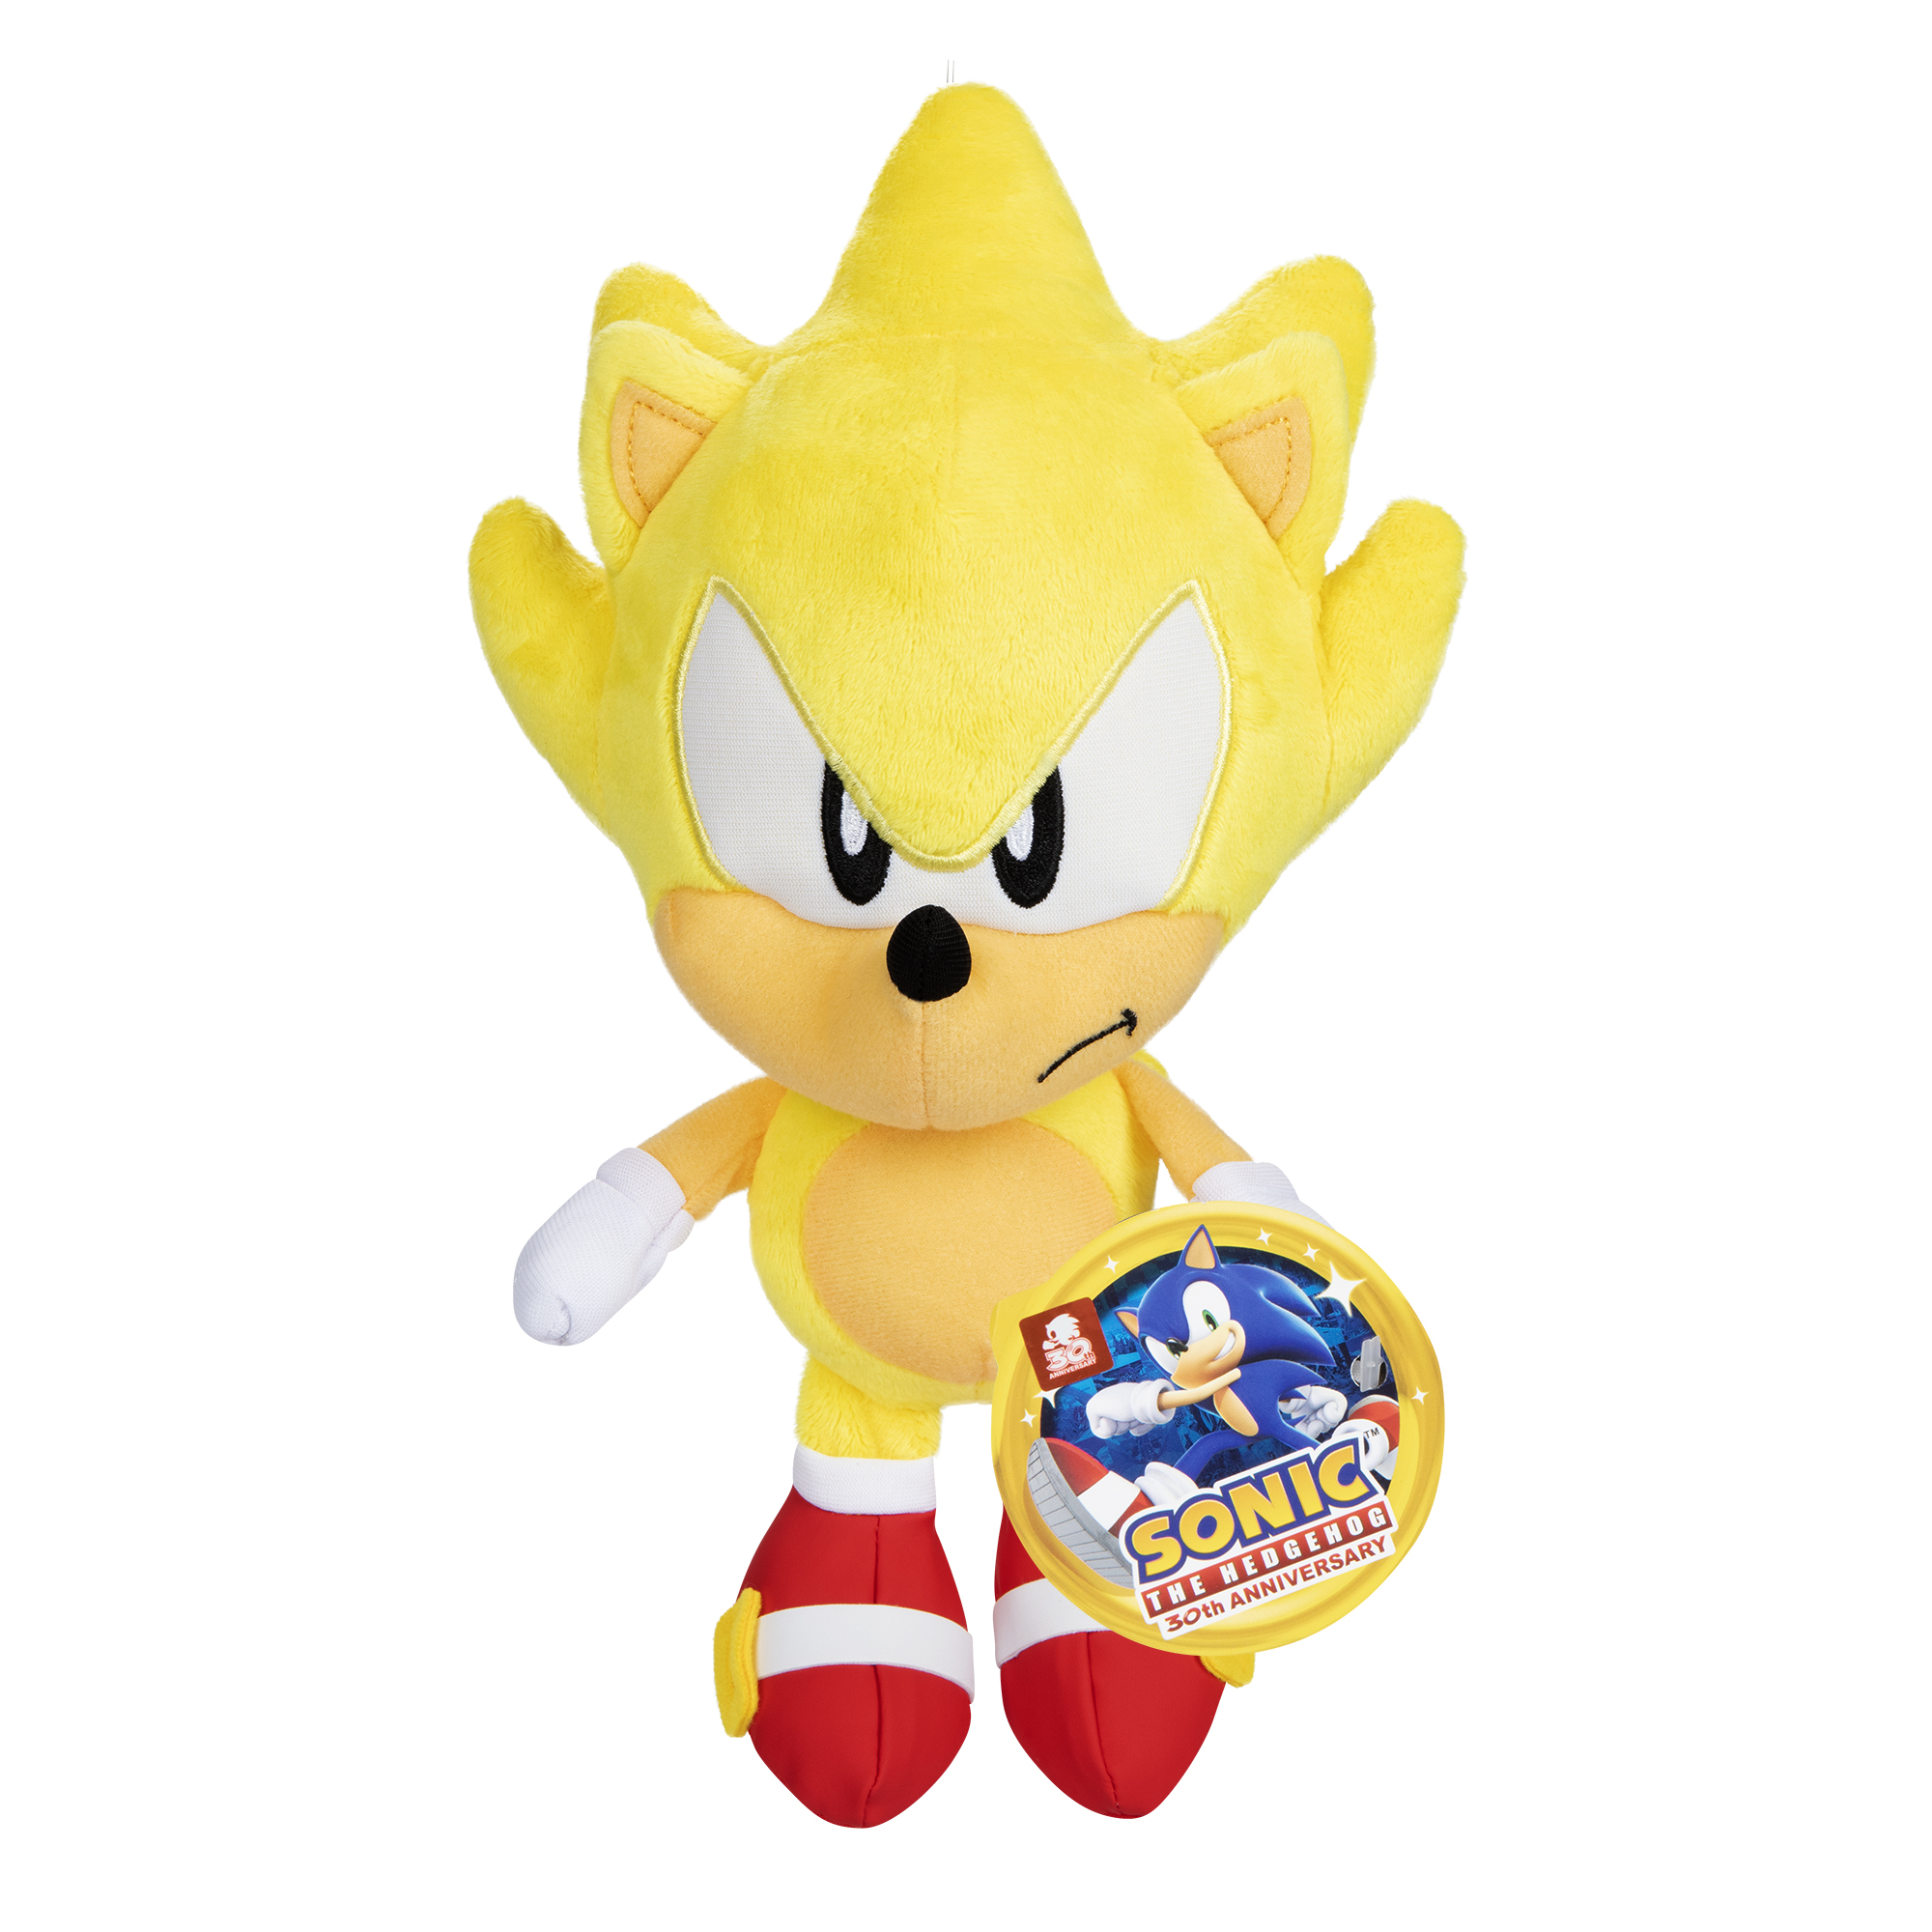 JAKKS Pacific announces extension of Sonic the Hedgehog license 